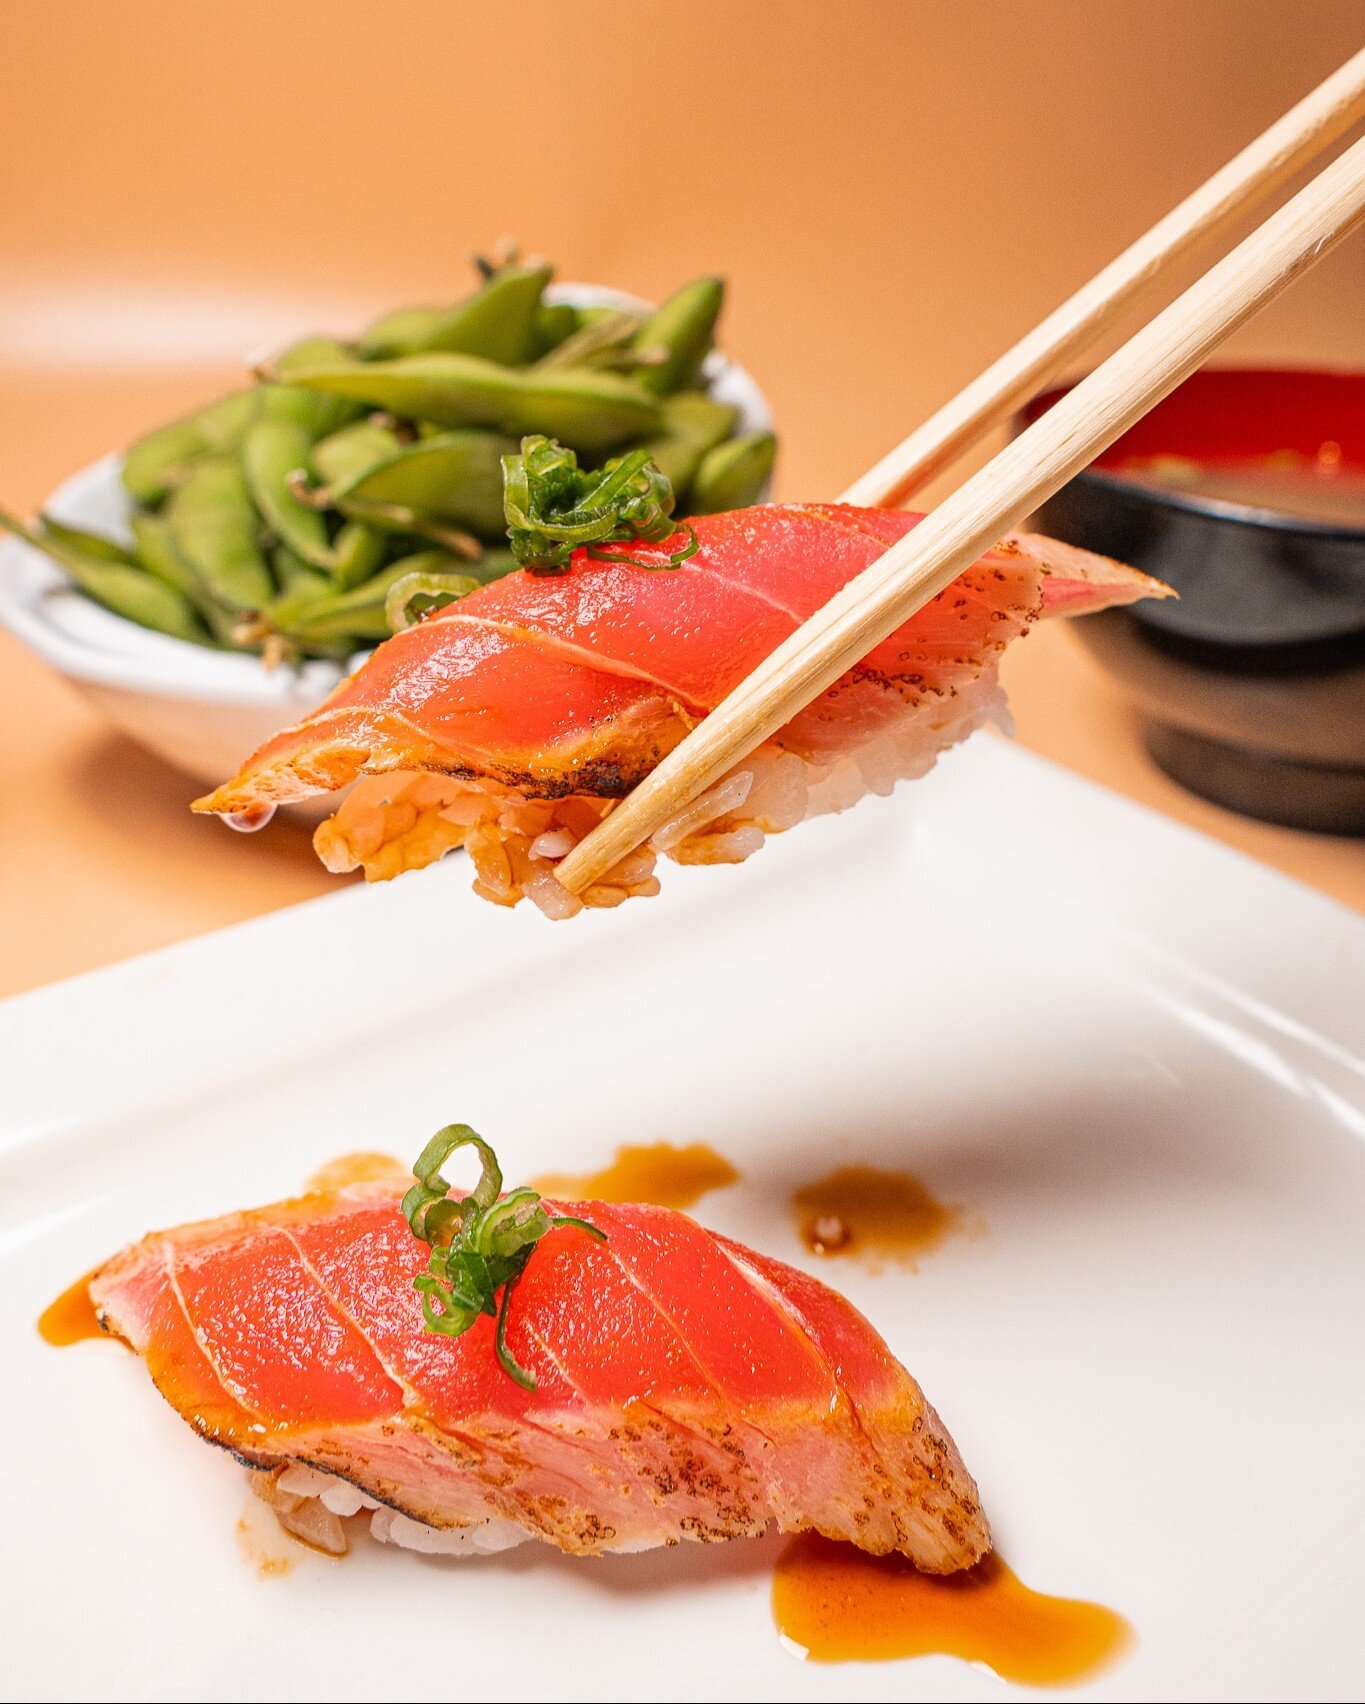 Rolling into the week with a side of sushi bliss! ITADAKIMASU! #UmamiJourney 🍱🔄

◾️◽️◾️◽️◾️◽️◾️◽️◾️◽️ 

🍣 𝗔𝗬𝗖𝗘 𝗦𝗨𝗦𝗛𝗜 𝗛𝗢𝗨𝗦𝗘 𝗚𝗢𝗬𝗘𝗠𝗢𝗡 
⏰ ᴅᴀɪʟʏ: 12:00 ᴘᴍ - 11:00 ᴘᴍ 
⏰ ʟᴀꜱᴛ ꜱᴇᴀᴛɪɴɢ ꜰᴏʀ ᴀʏᴄᴇ 10ᴘᴍ 
⏰ ʟᴀꜱᴛ ᴏʀᴅᴇʀ 10:30ᴘᴍ 
📍 5255 ꜱ ᴅᴇ